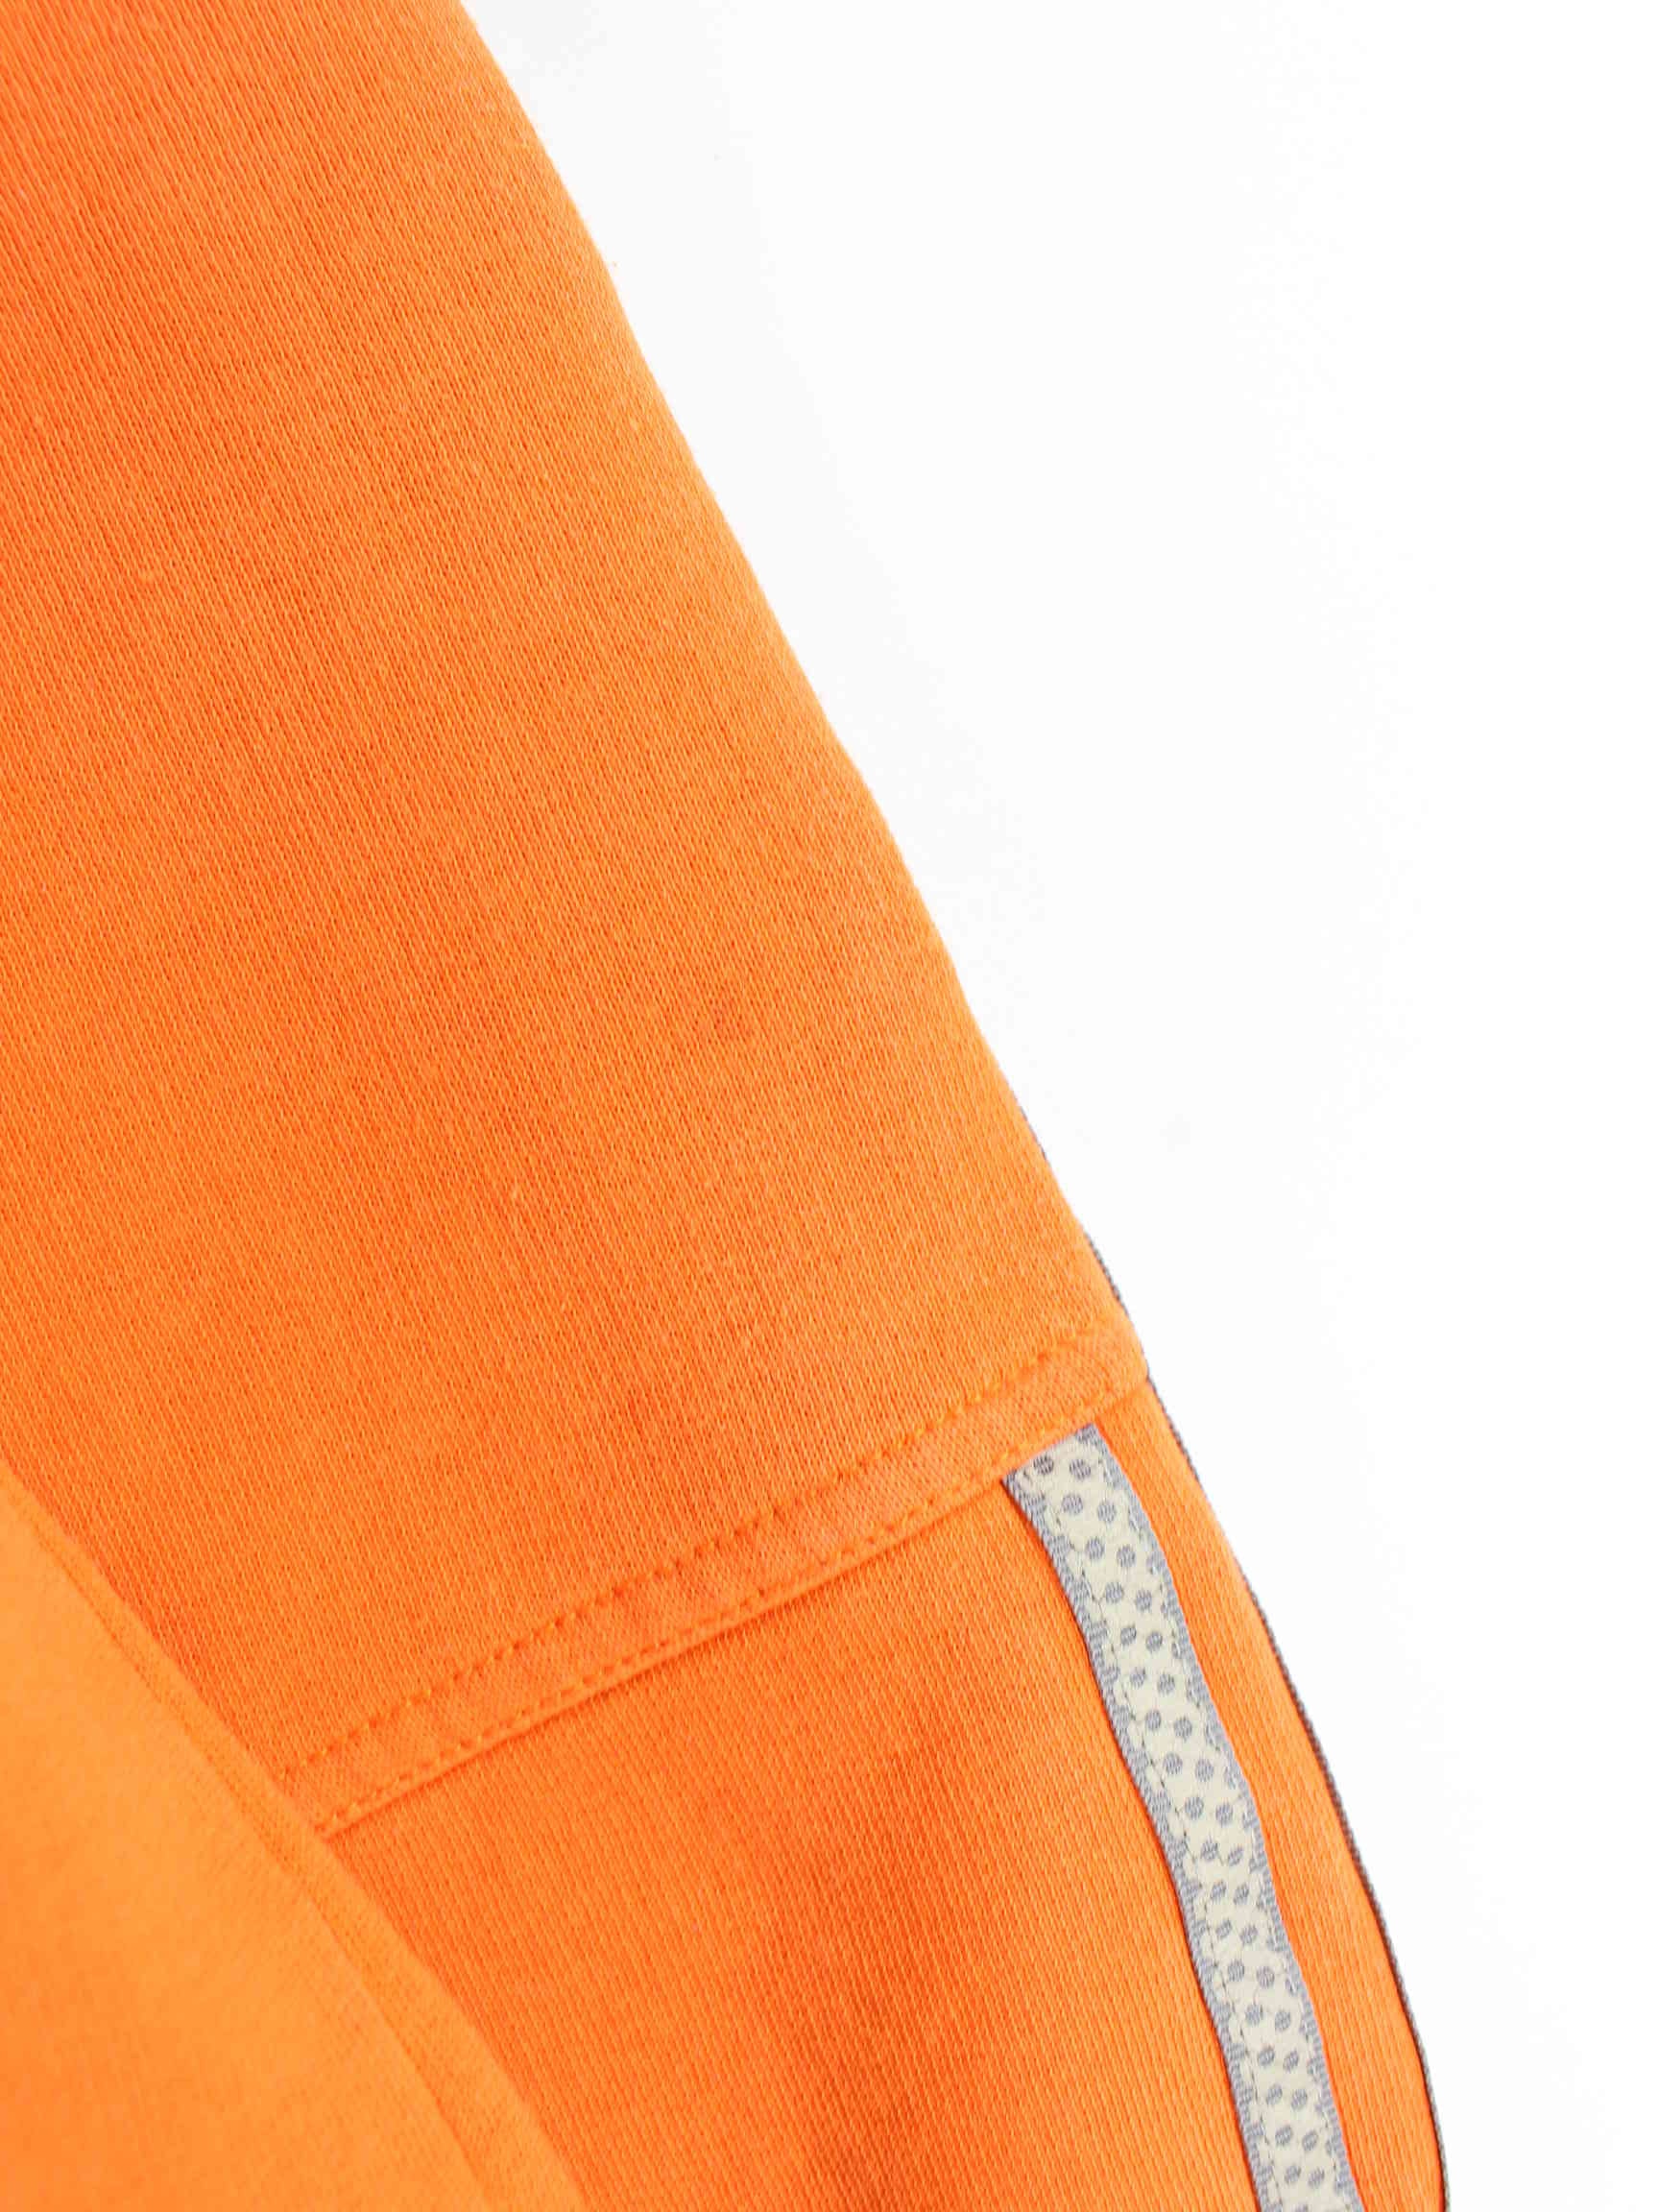 Adidas 90s Vintage Basic Sweater Orange L (detail image 10)